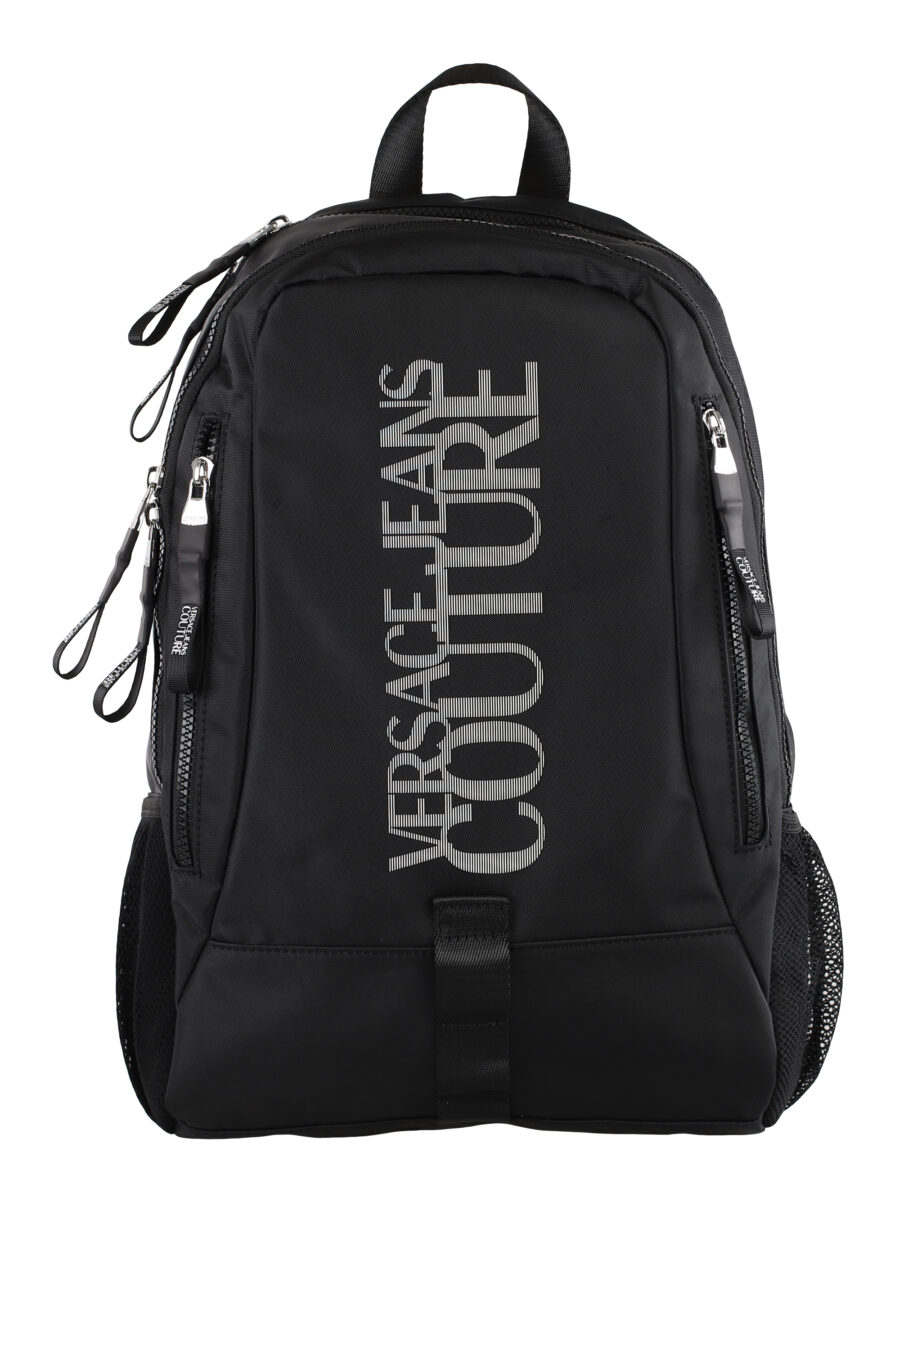 Black backpack with maxilogo - IMG 5128